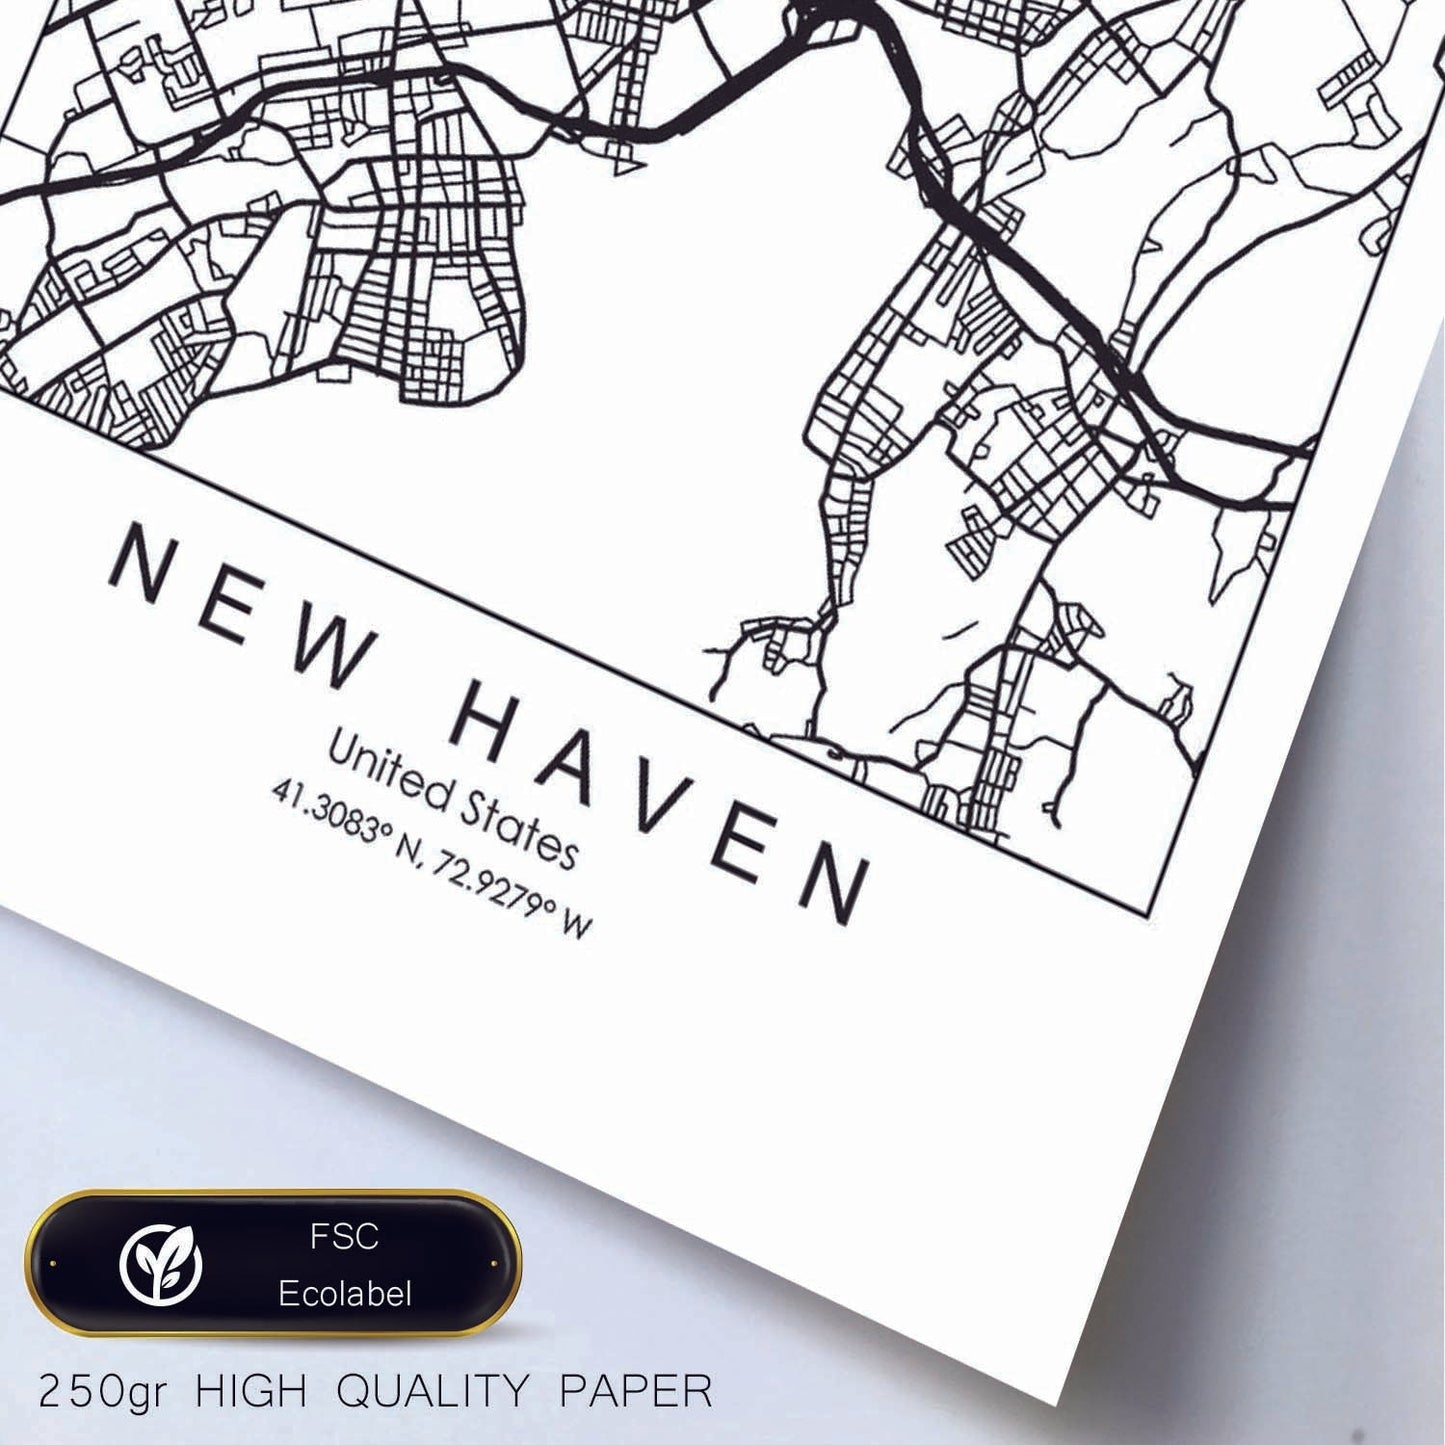 Poster con mapa de New Haven. Lámina de Estados Unidos, con imágenes de mapas y carreteras-Artwork-Nacnic-Nacnic Estudio SL